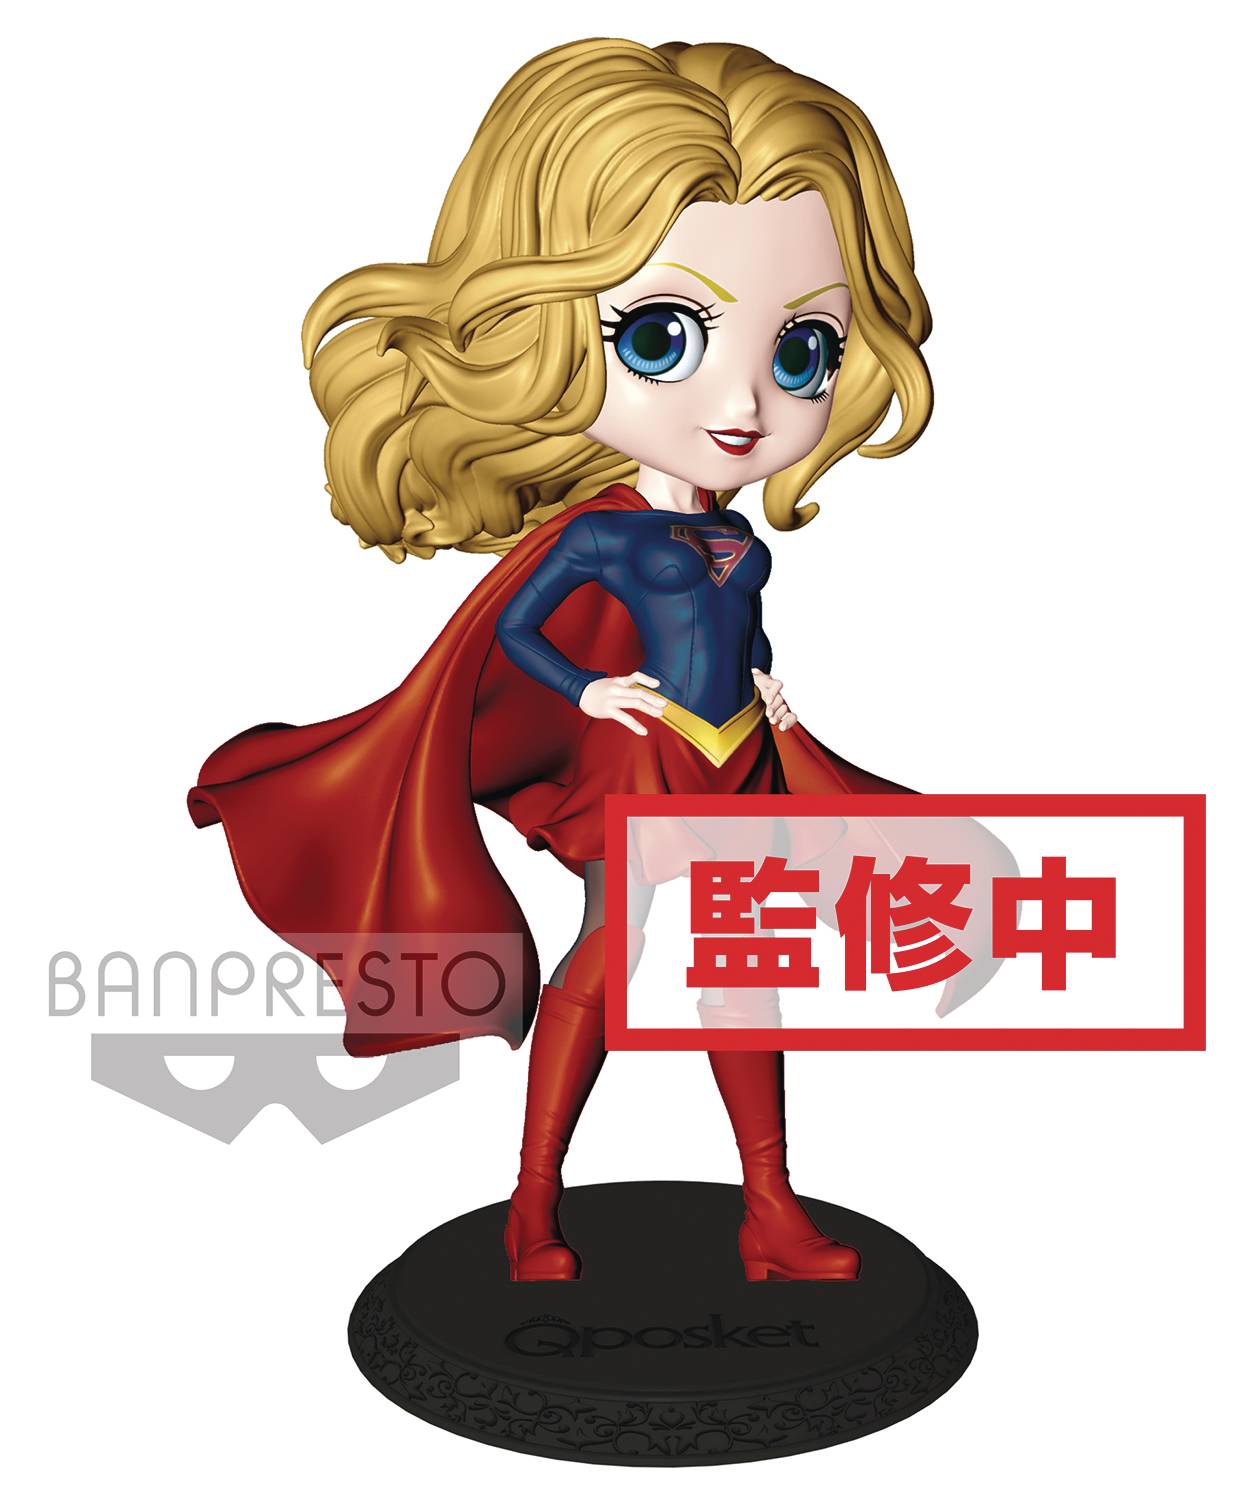 Banpresto DC Comics Supergirl Q-Posket Figure